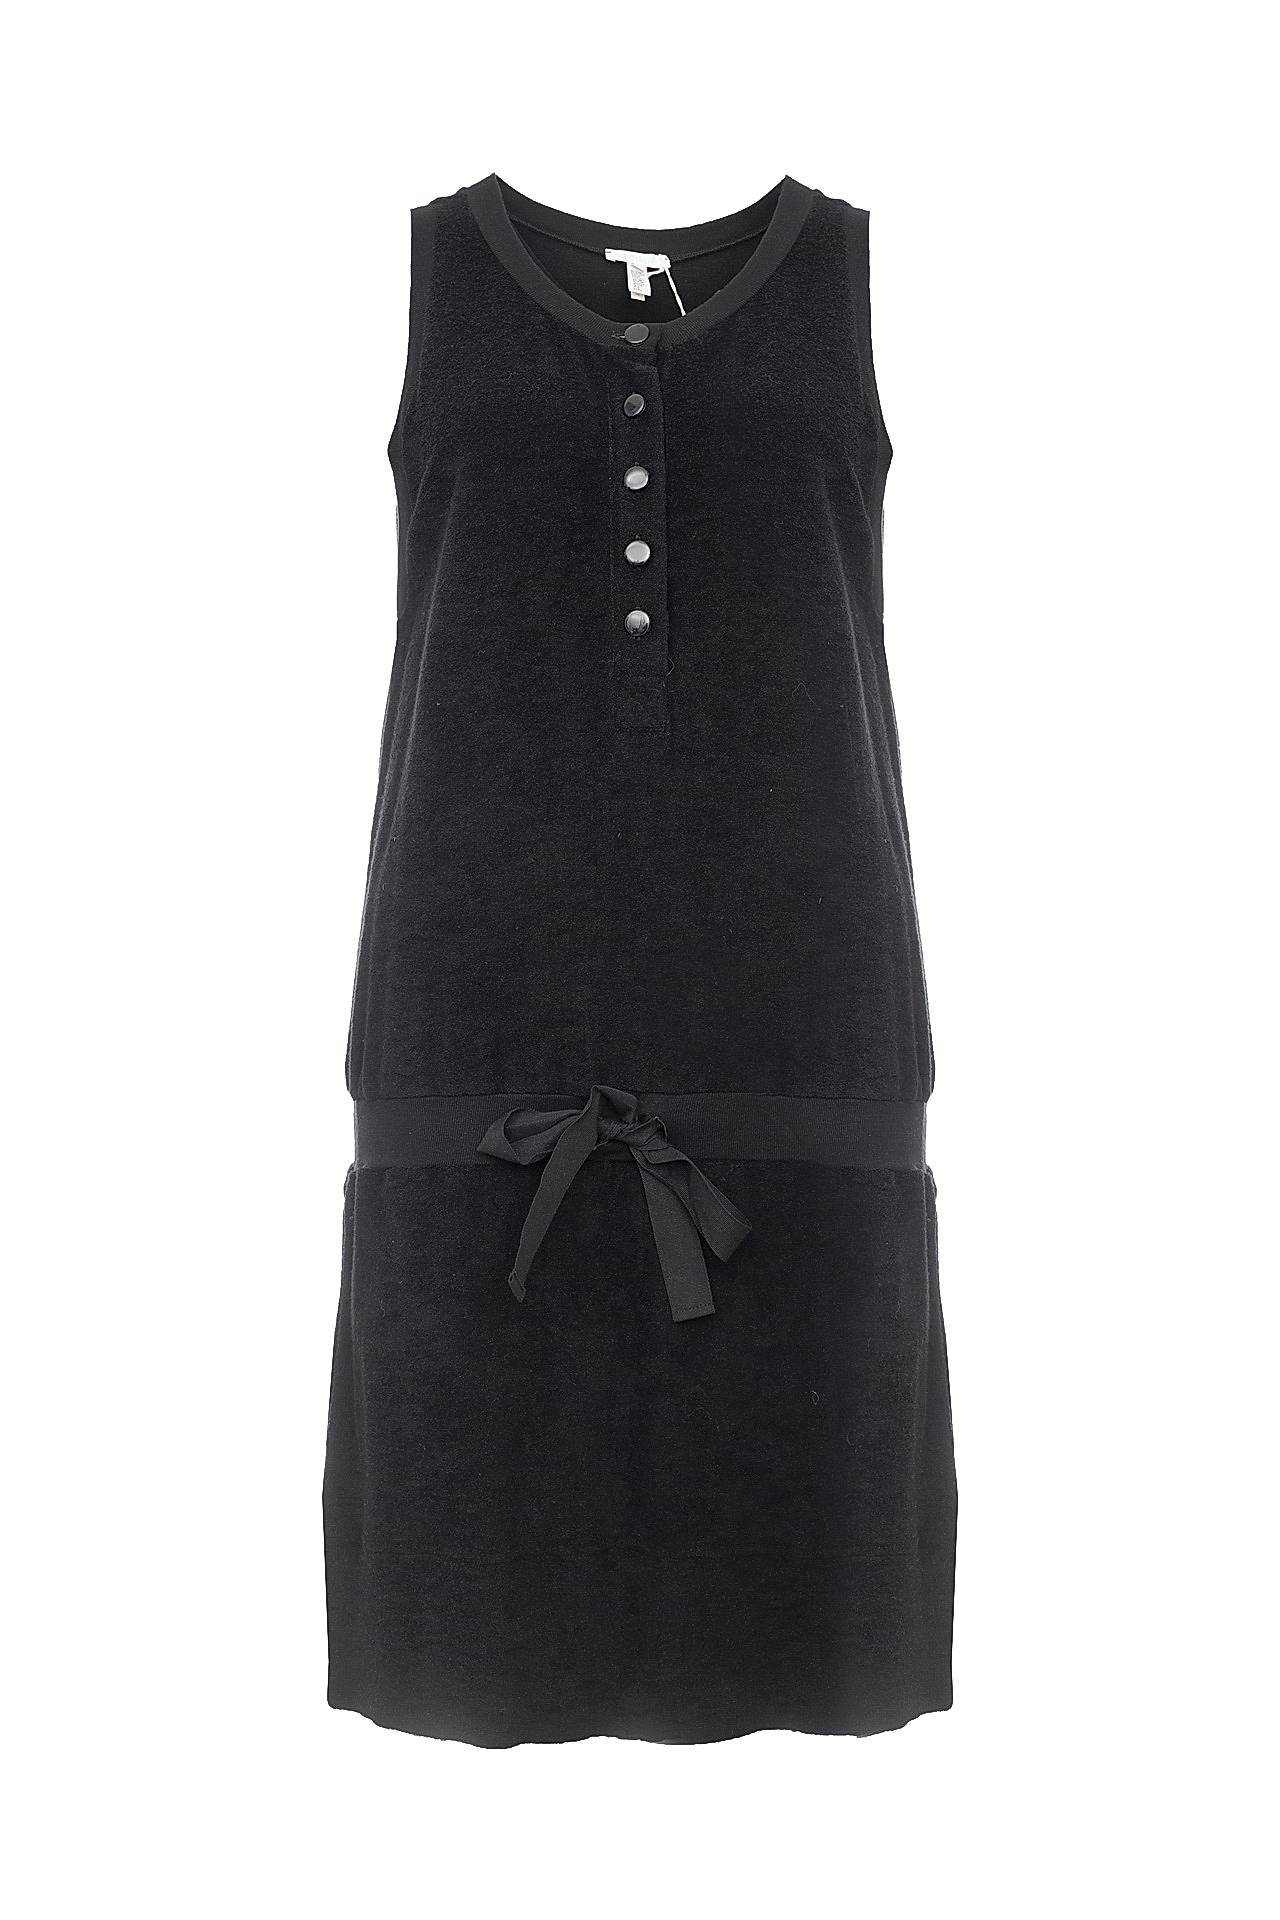 Одежда женская Платье CHLOE (A259516/19). Купить за 12750 руб.